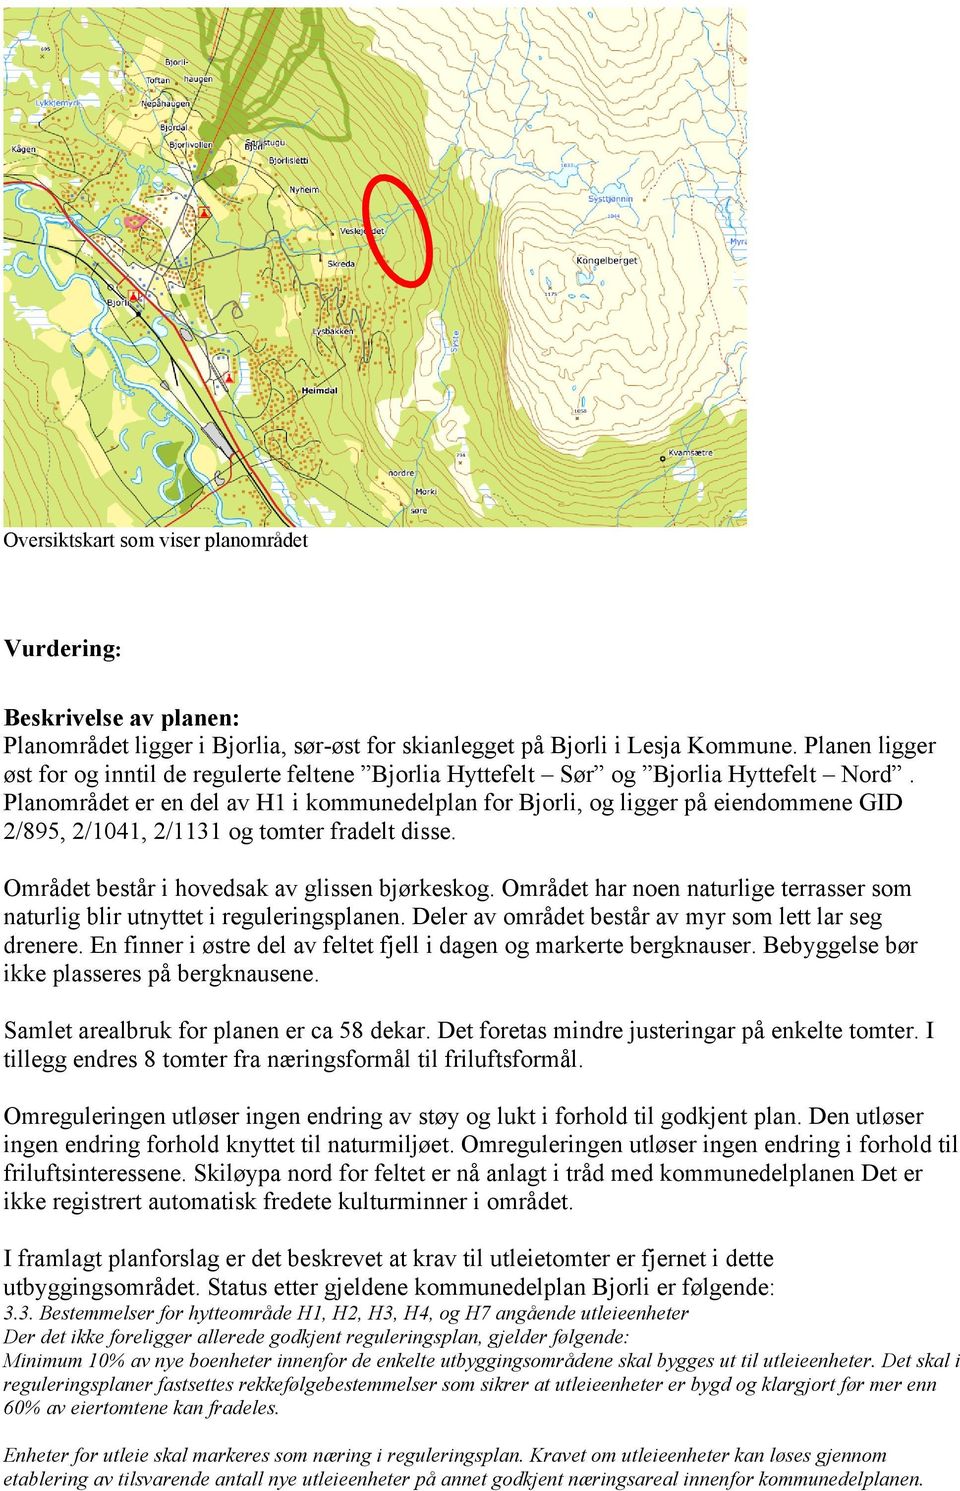 Planområdet er en del av H1 i kommunedelplan for Bjorli, og ligger på eiendommene GID 2/895, 2/1041, 2/1131 og tomter fradelt disse. Området består i hovedsak av glissen bjørkeskog.